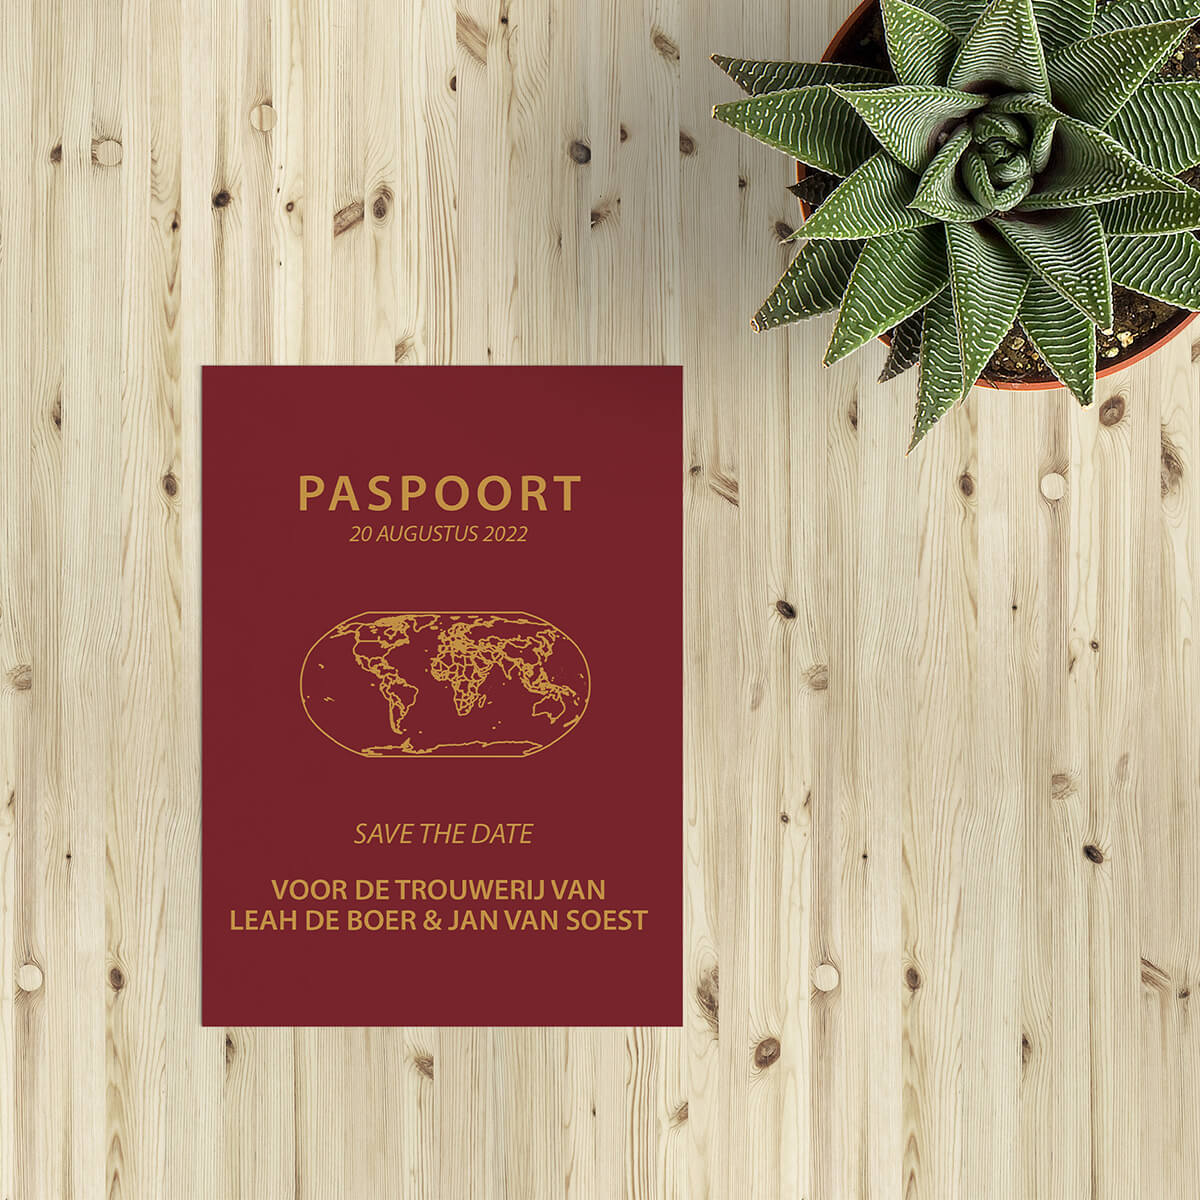 Save the date kaart Paspoort is vormgegeven naar het voorbeeld van een Nederlands paspoort, volledig in het thema van een bruiloft.